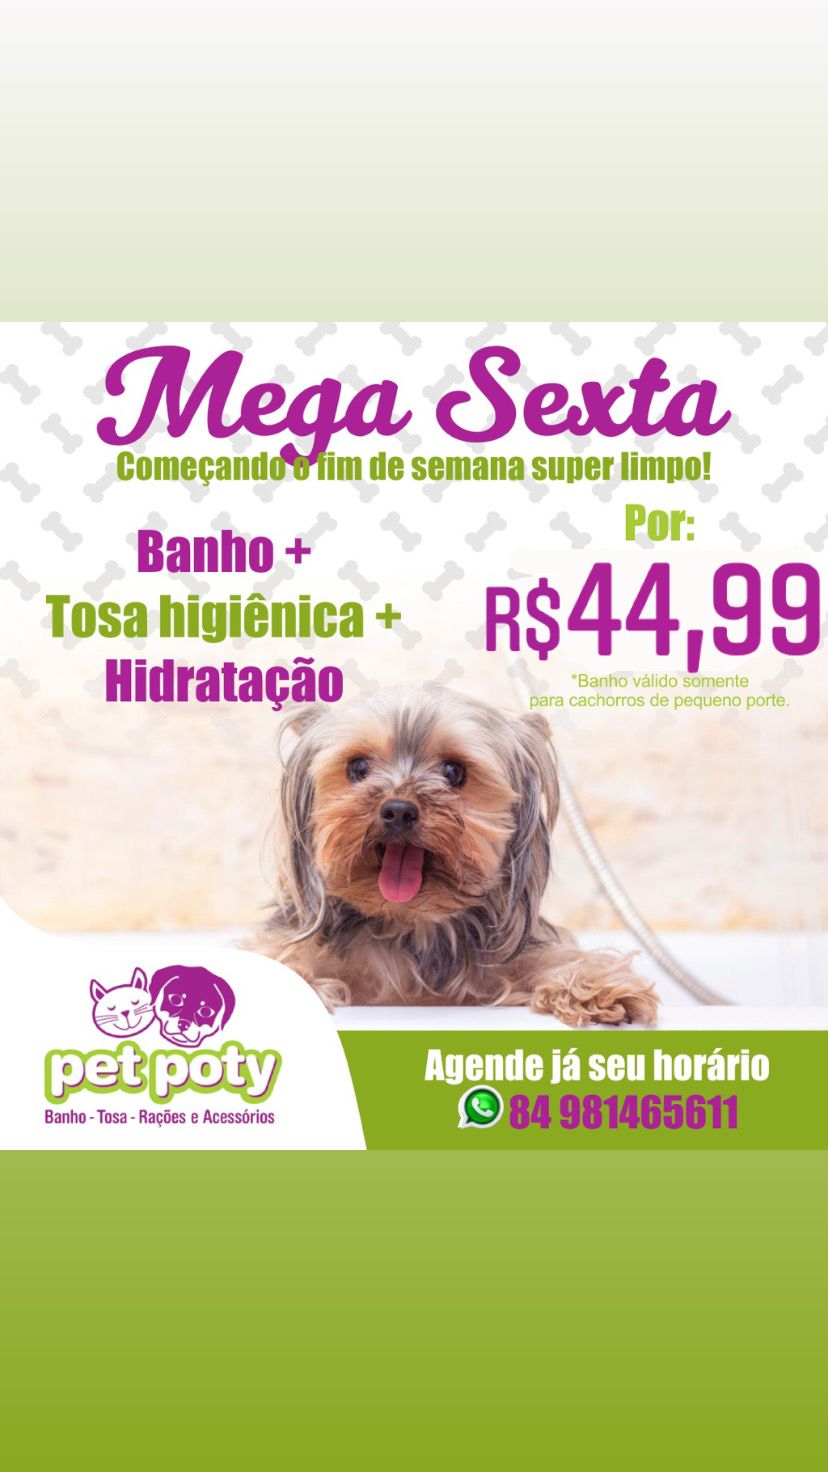 Promoção: Mega Sexta - Banho  + Tosa higiênica + Hidratação  por somente...